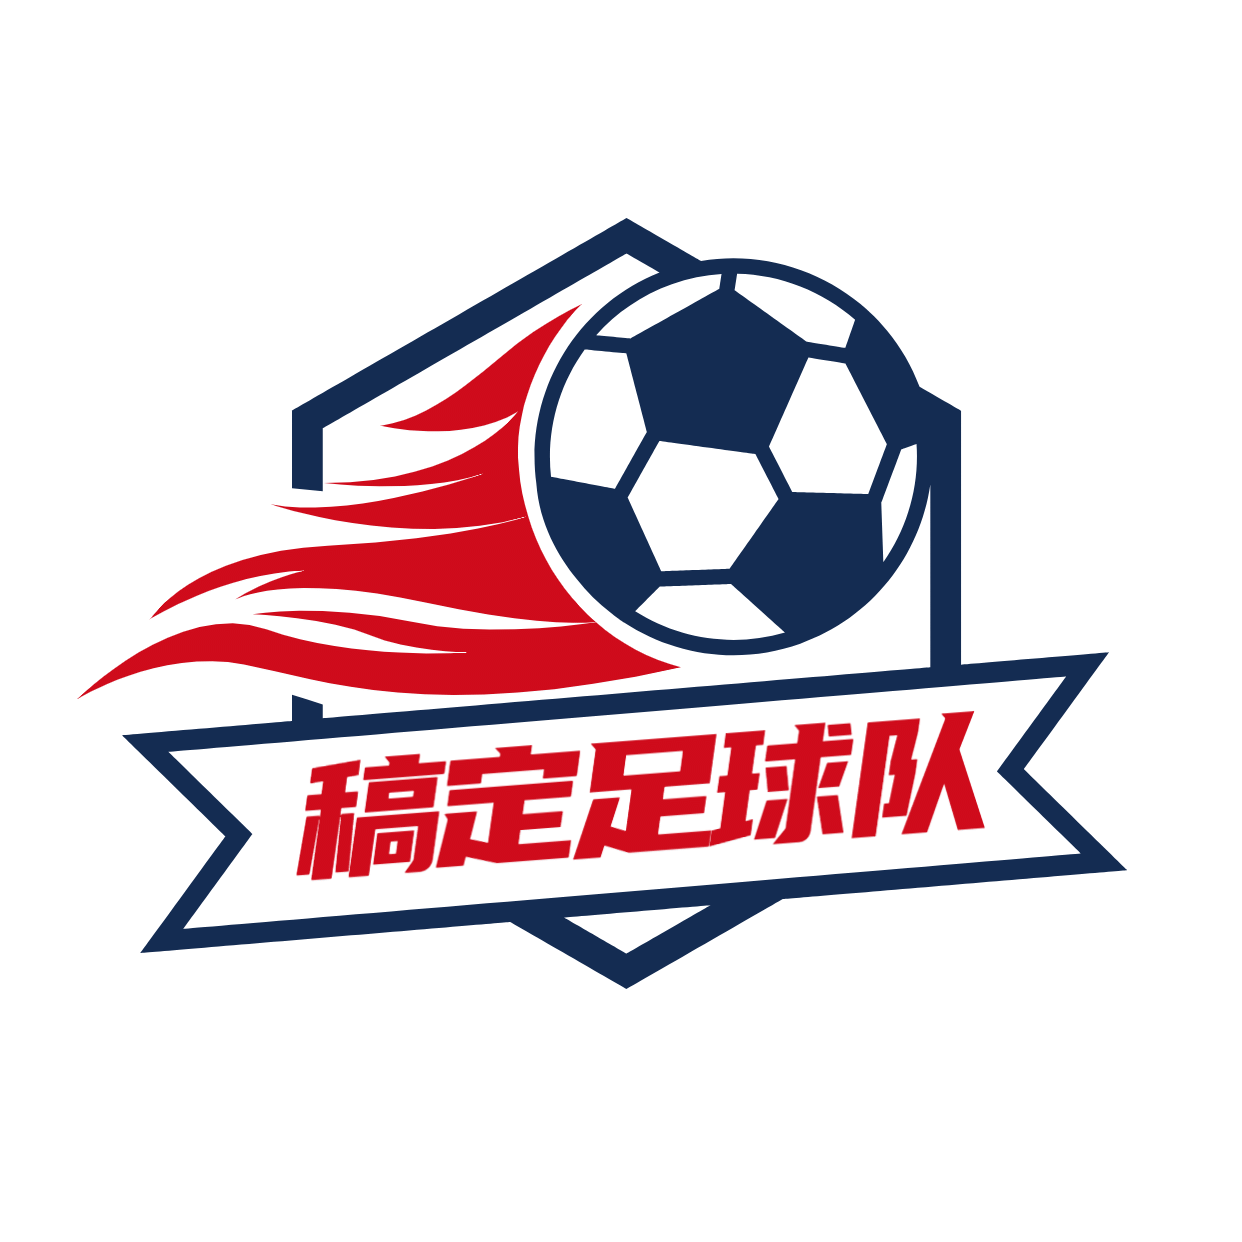 教育培训机构足球队头像logo预览效果